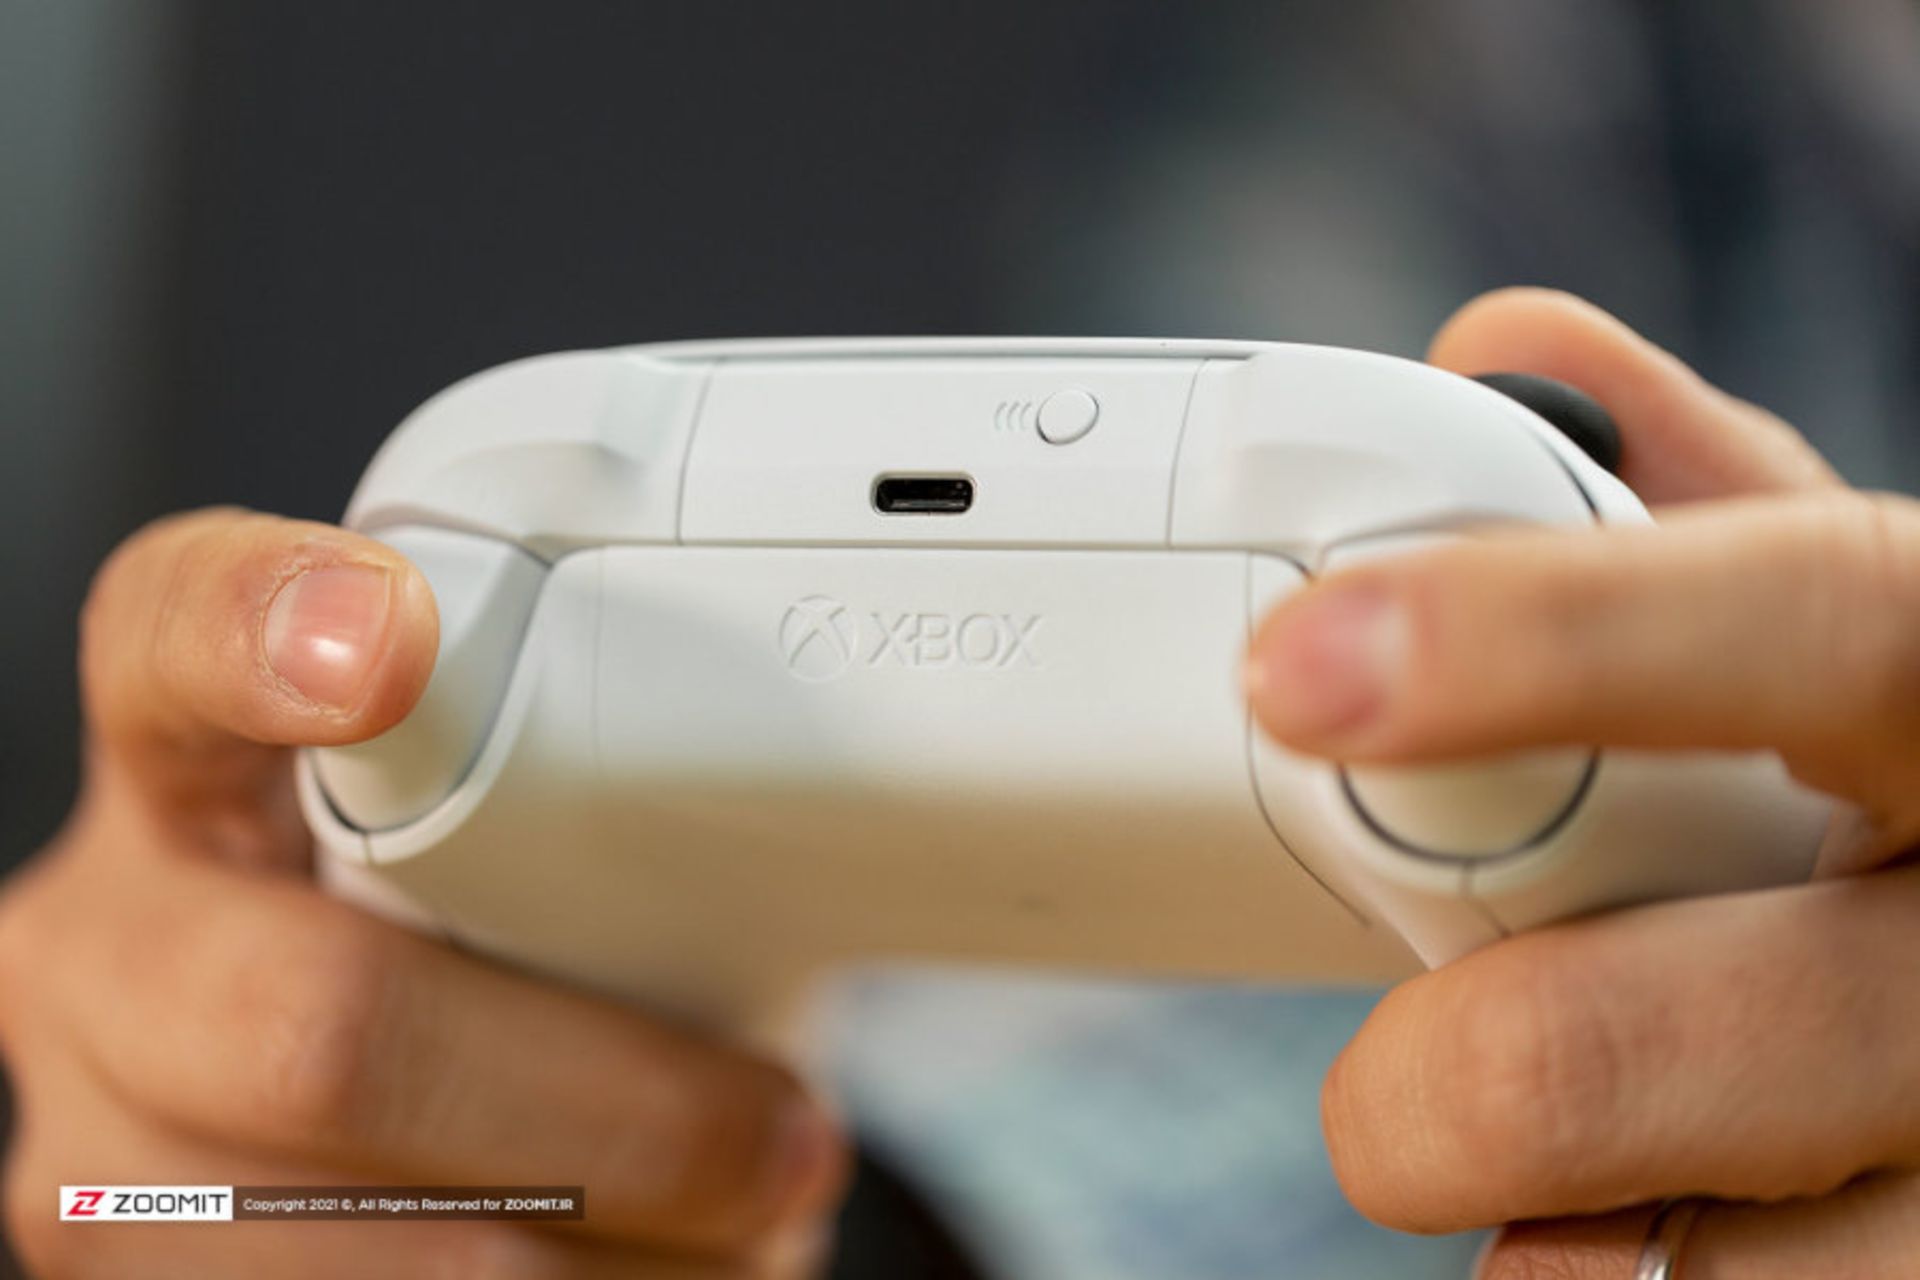 قیمت دسته ایکس باکس Xbox سری اس سفید در بخش محصولات زومیت